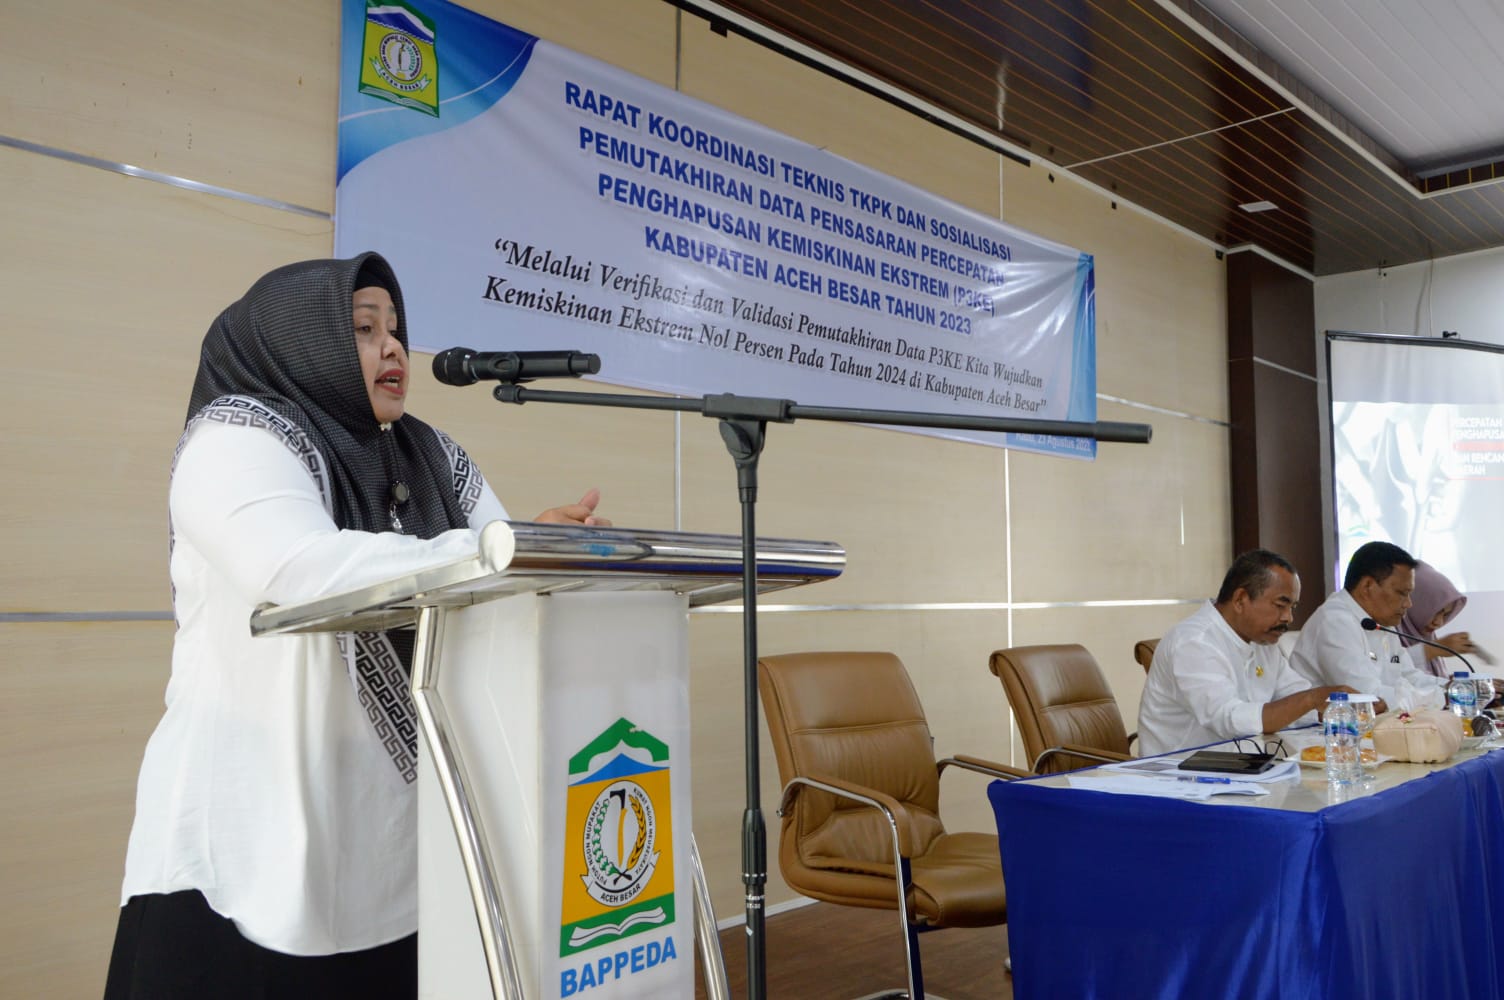 Ket. Foto : Kepala Bappeda Aceh Besar, Rahmawati SPd memberikan kata sambutan pada pembukaan Rakor Teknis TKPK dan Sosialisasi P3KI Tahun 2023 di Kantor Beppeda, Aceh Besar, Selasa (23/8)